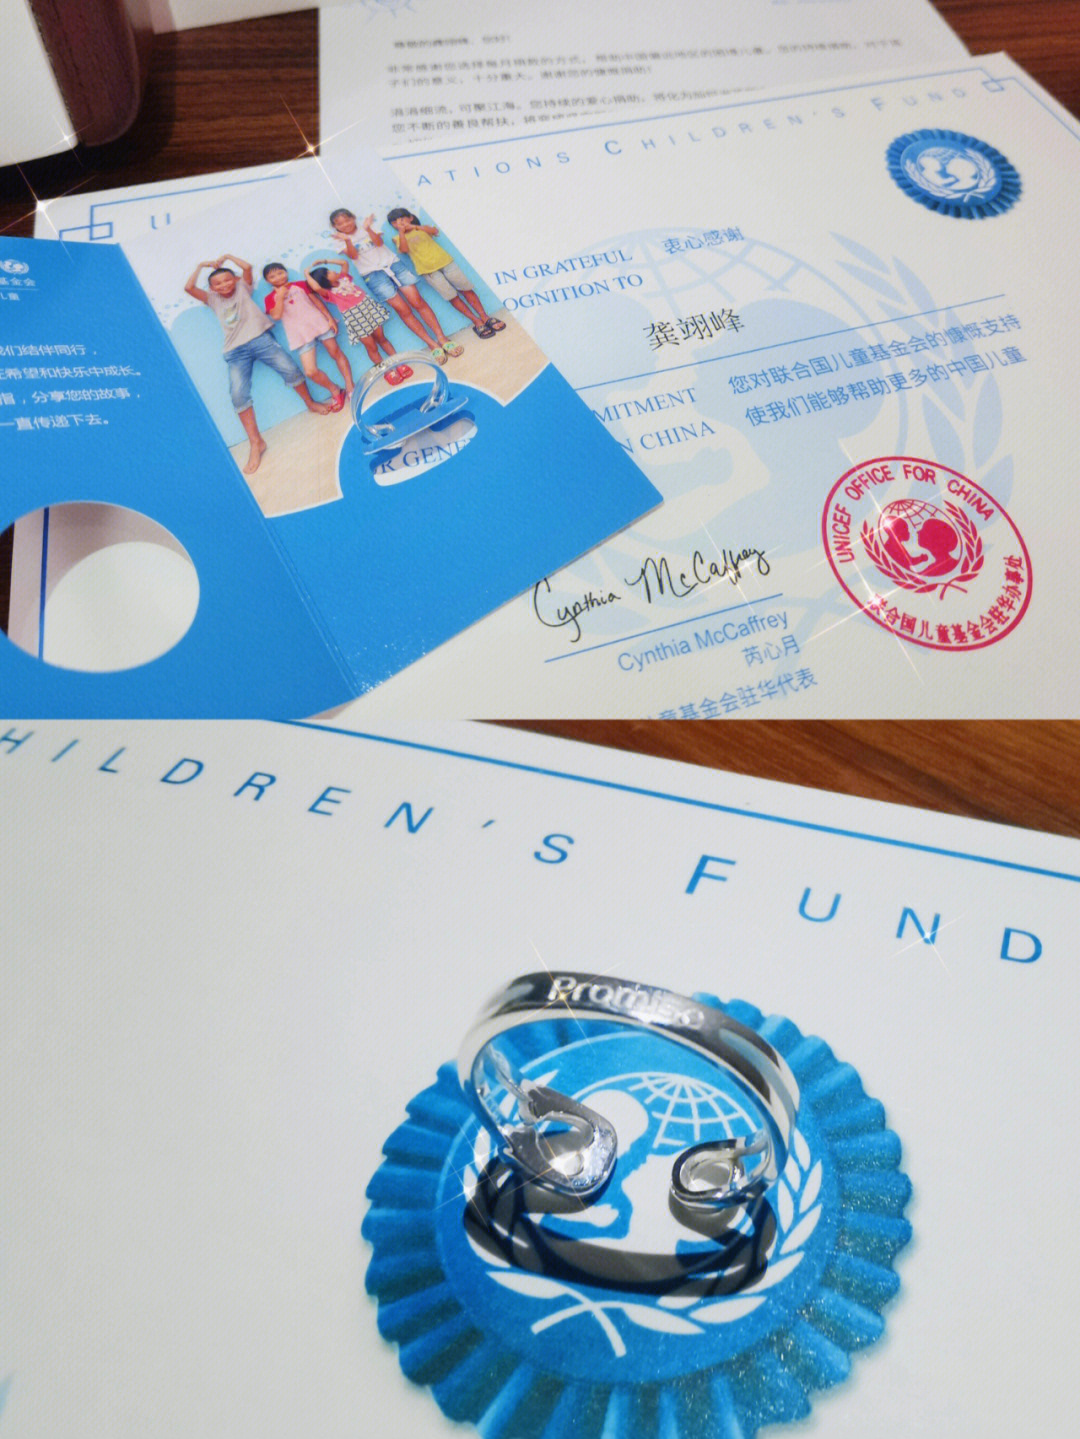 联合国儿童基金会徽章图片